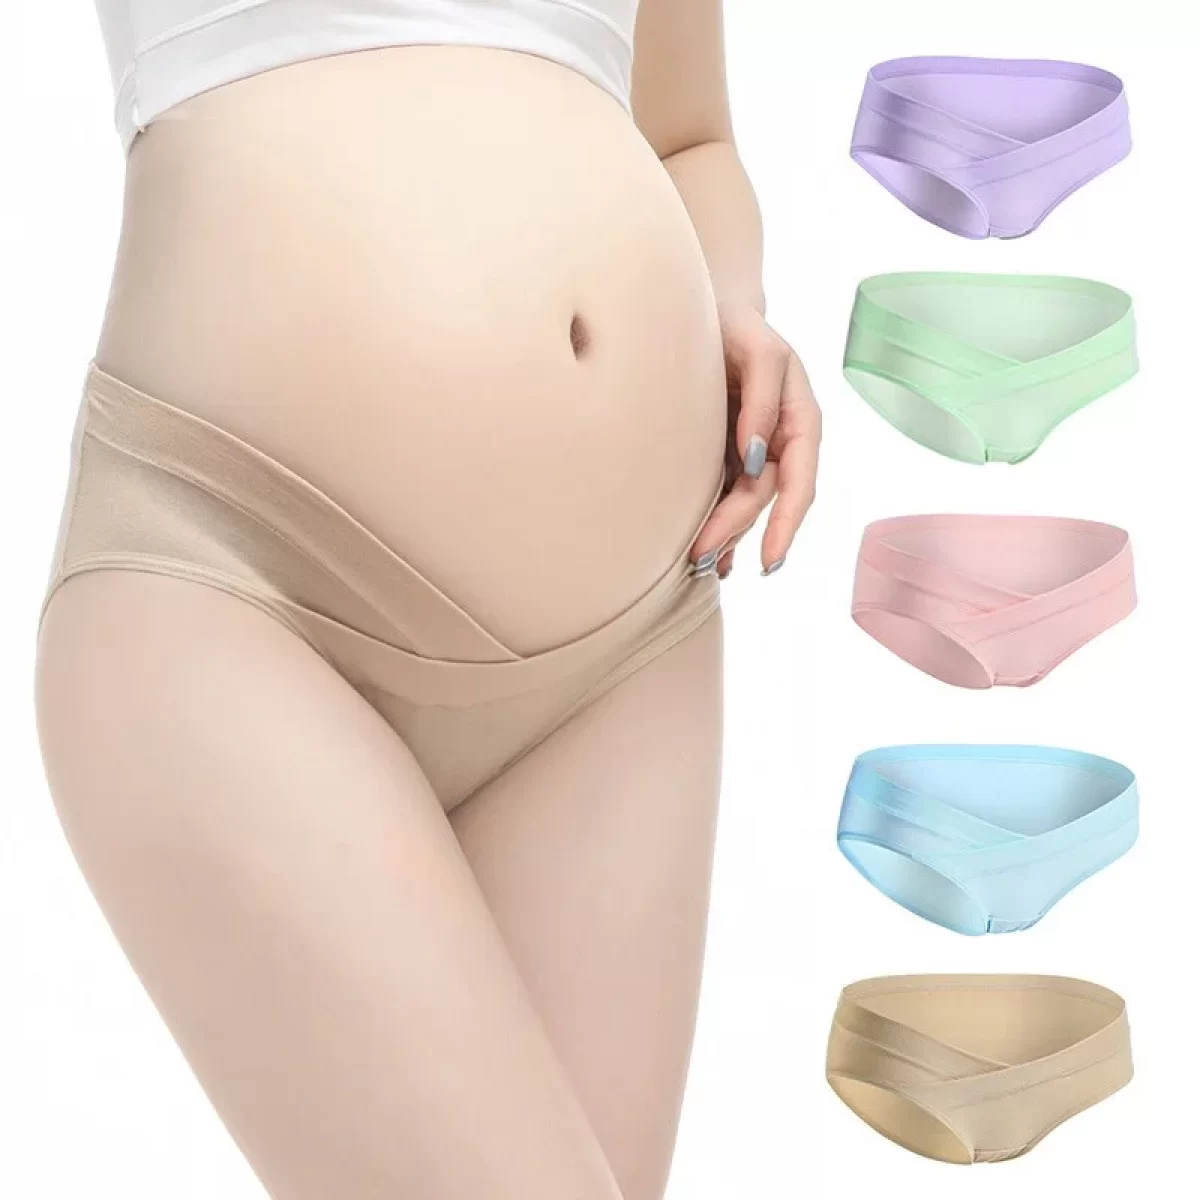  Cesarean Section Underwear